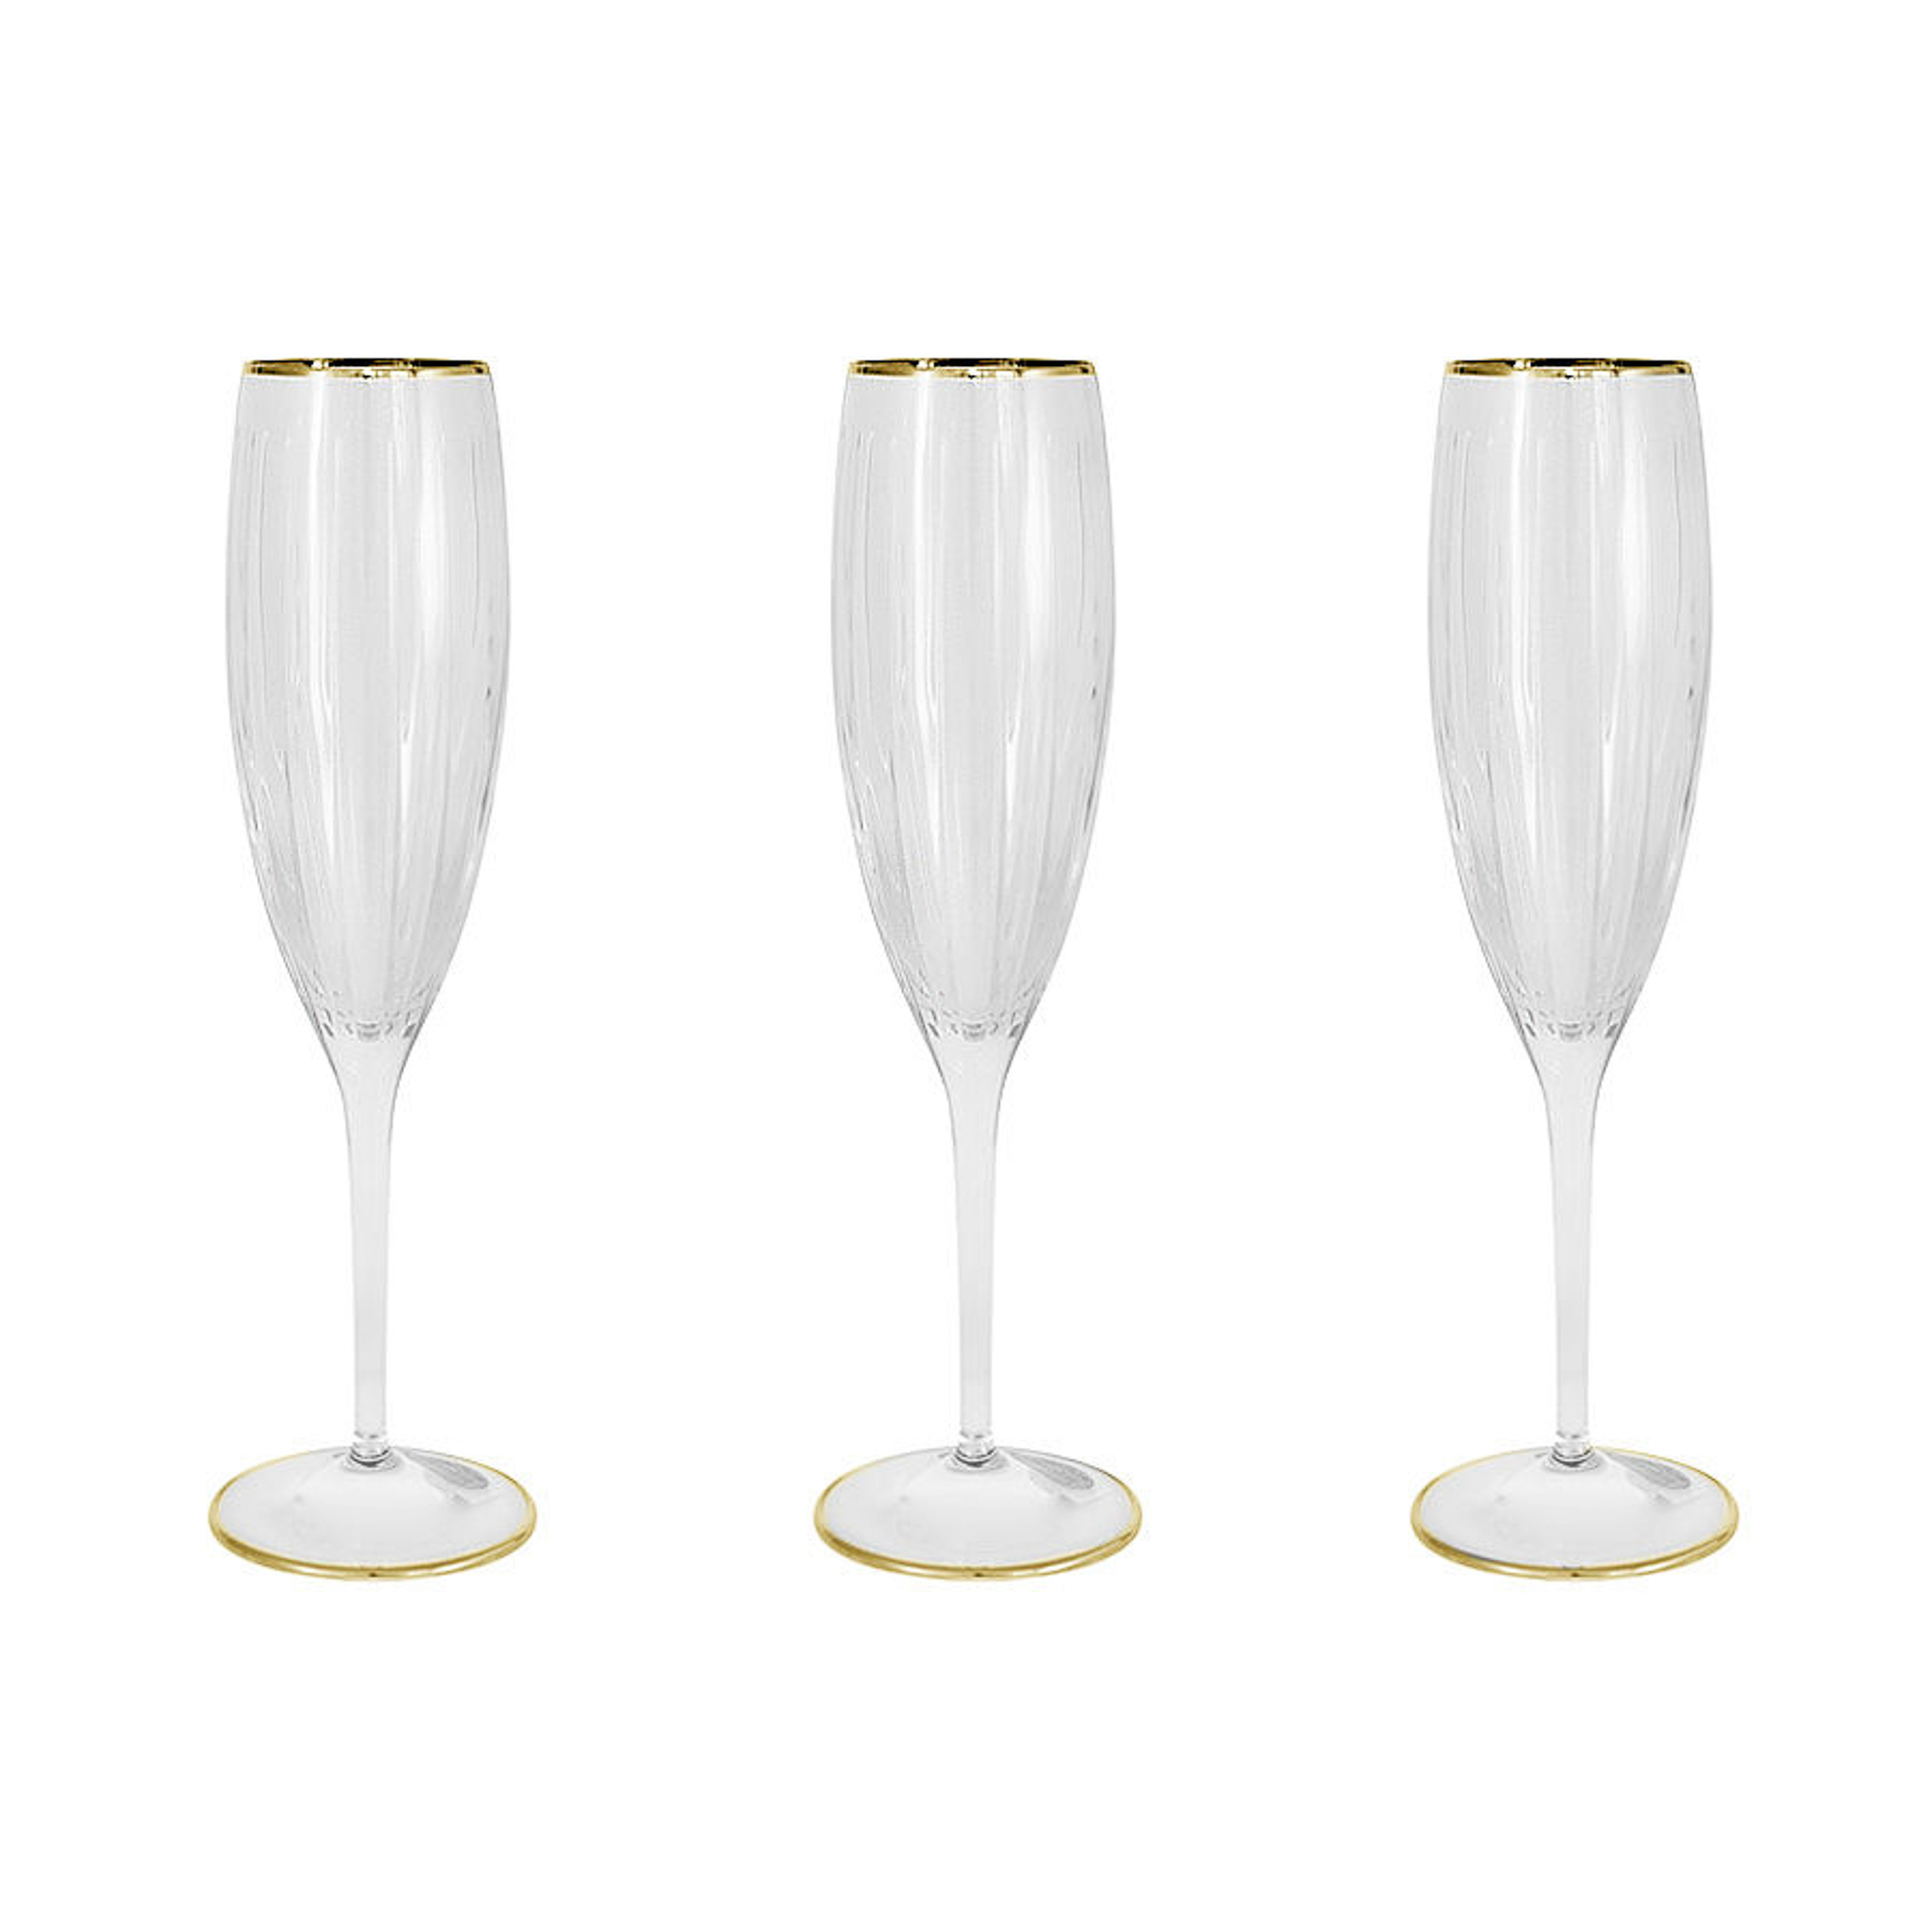 Набор фужеров Same Пиза золото для шампанского 150 мл 6 шт набор фужеров для шампанского cristal de paris межев 150 мл 6 шт